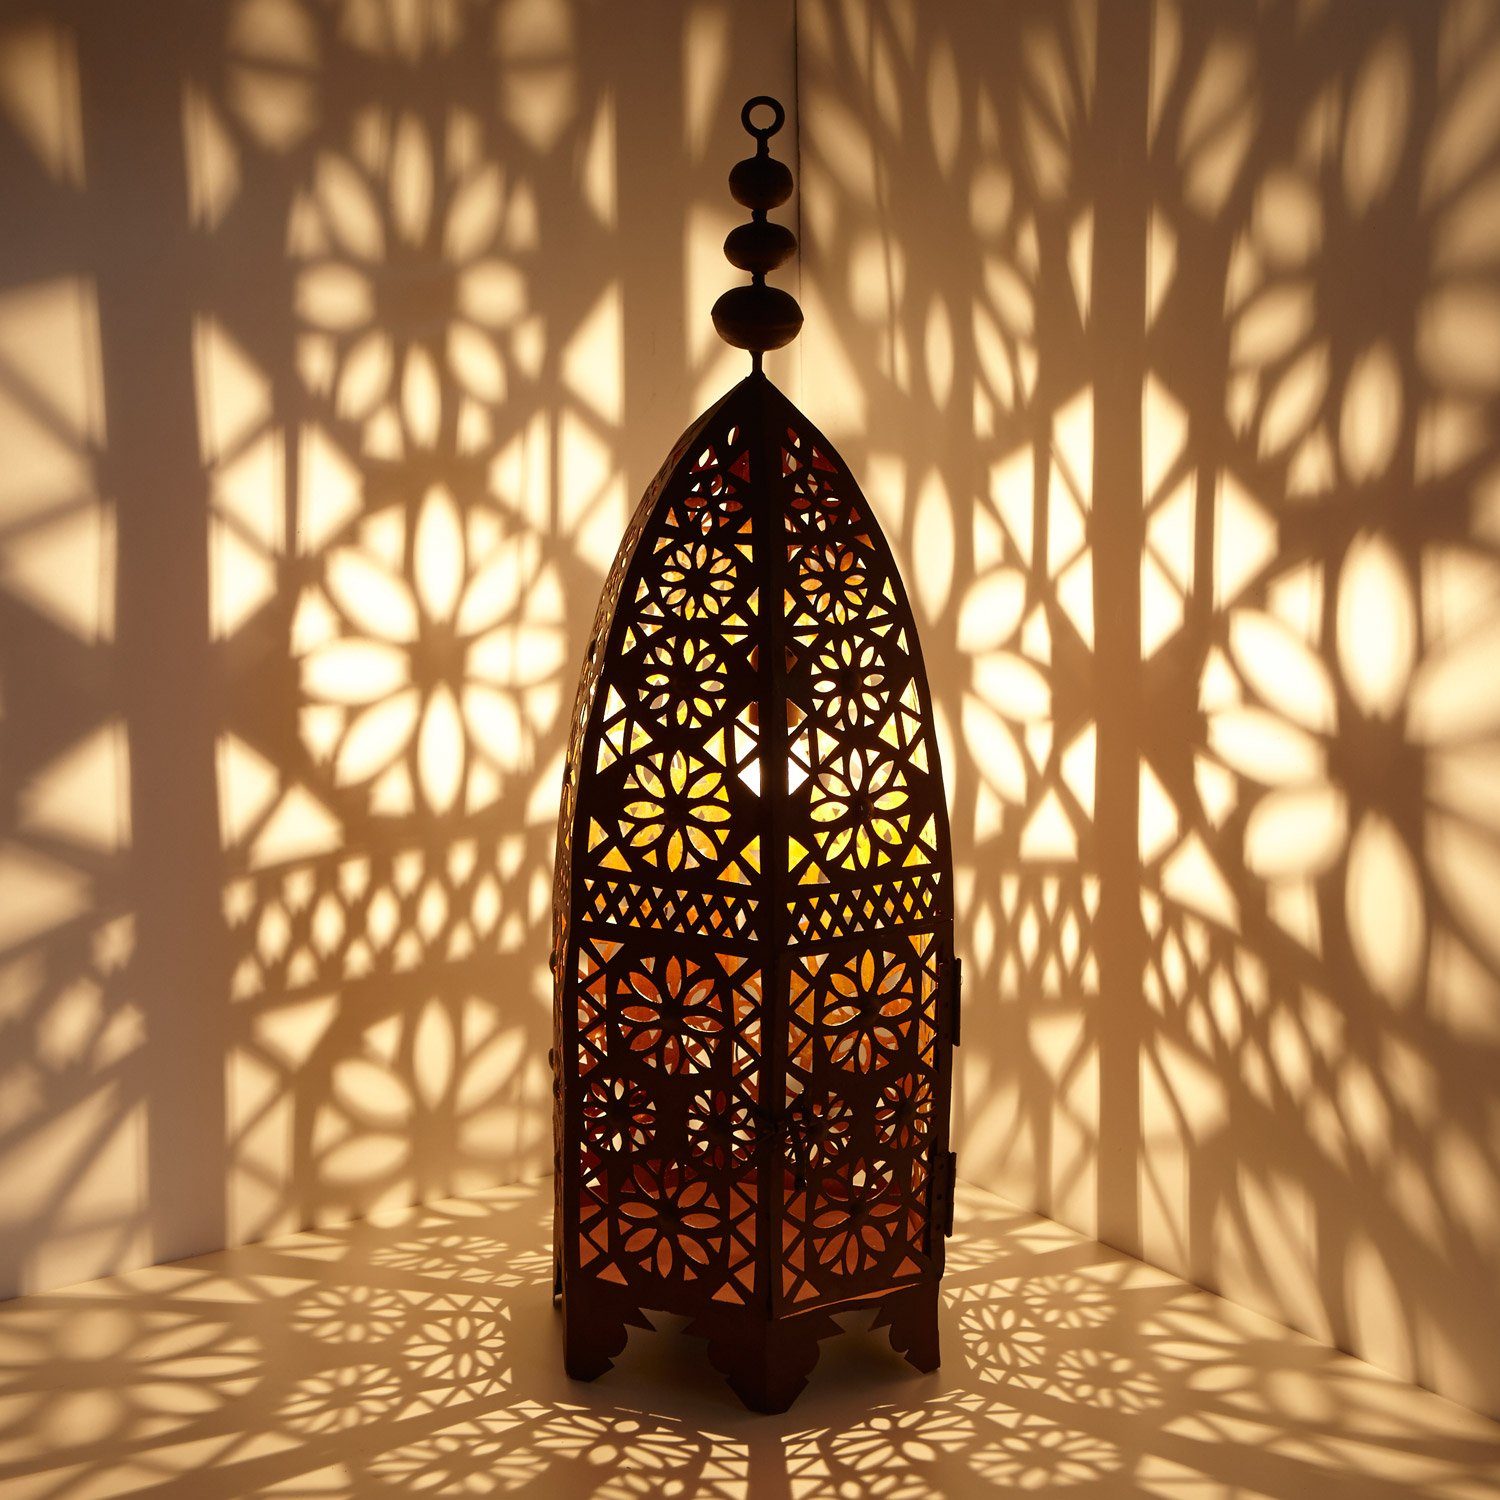 Casa Moro Bodenwindlicht Orientalische Laterne Anbar H80 cm edelrot-braun für draußen & Innen (Kunsthandwerk aus Marokko, hängend & stehend), marokkanische Gartenlaterne Windlicht Ramadan Wohn Deko, L1672